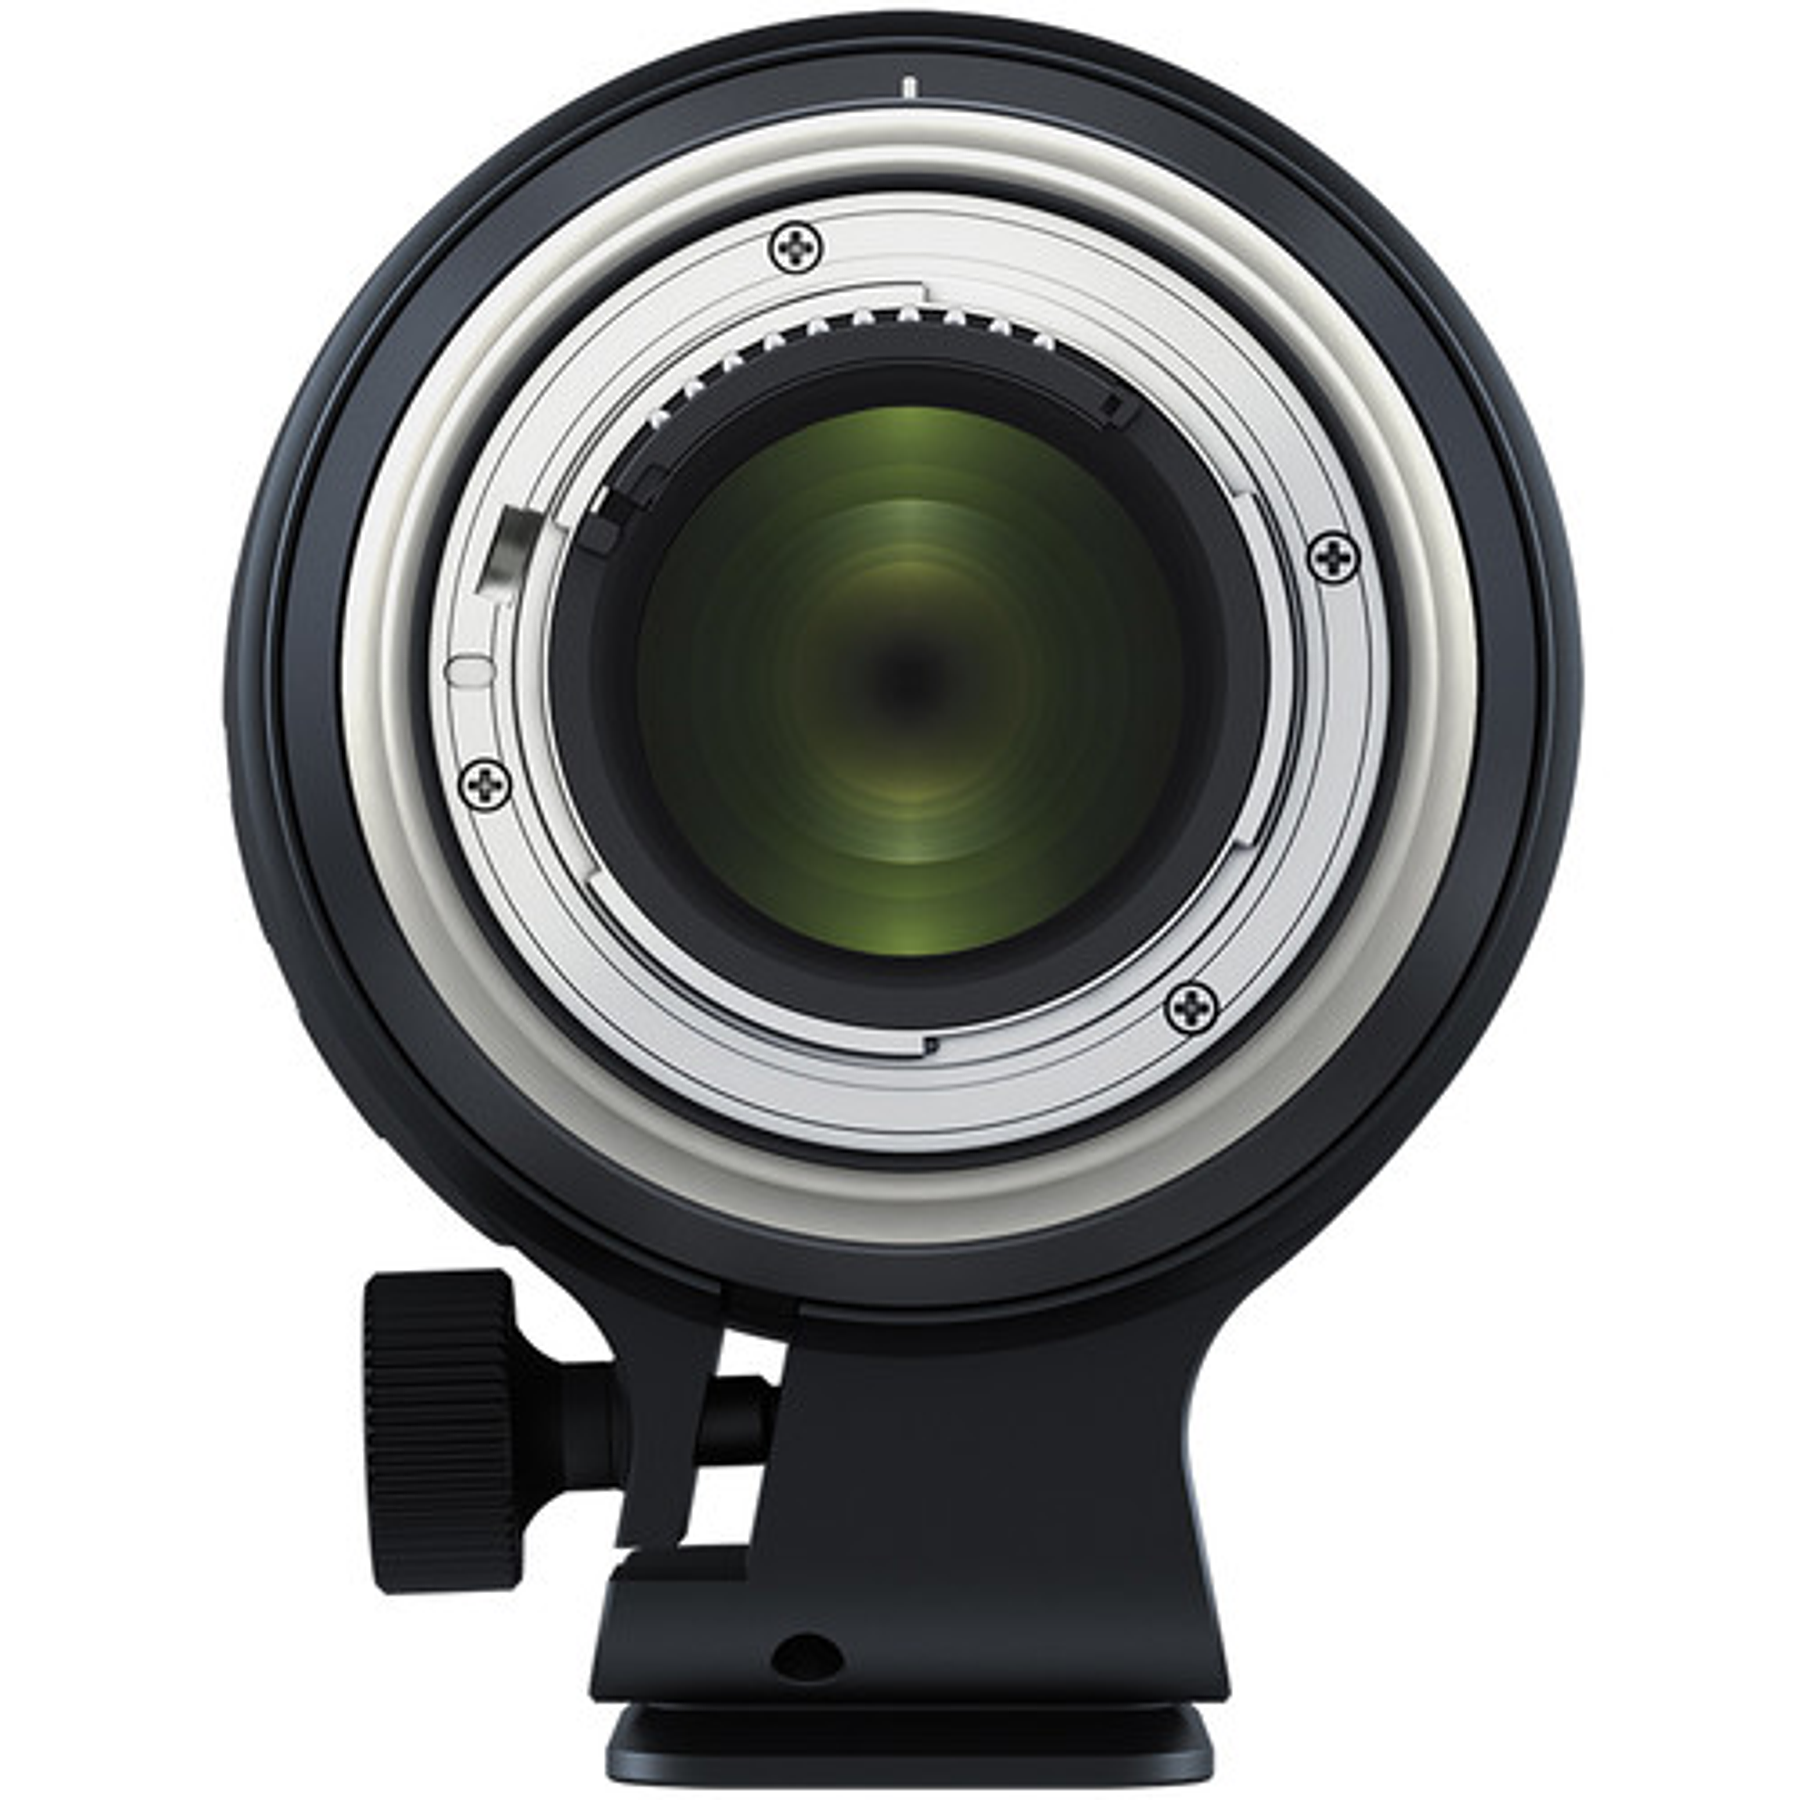 Tamron Lente SP 70-200mm f/2,8 Di VC USD G2 para Canon/Nikon